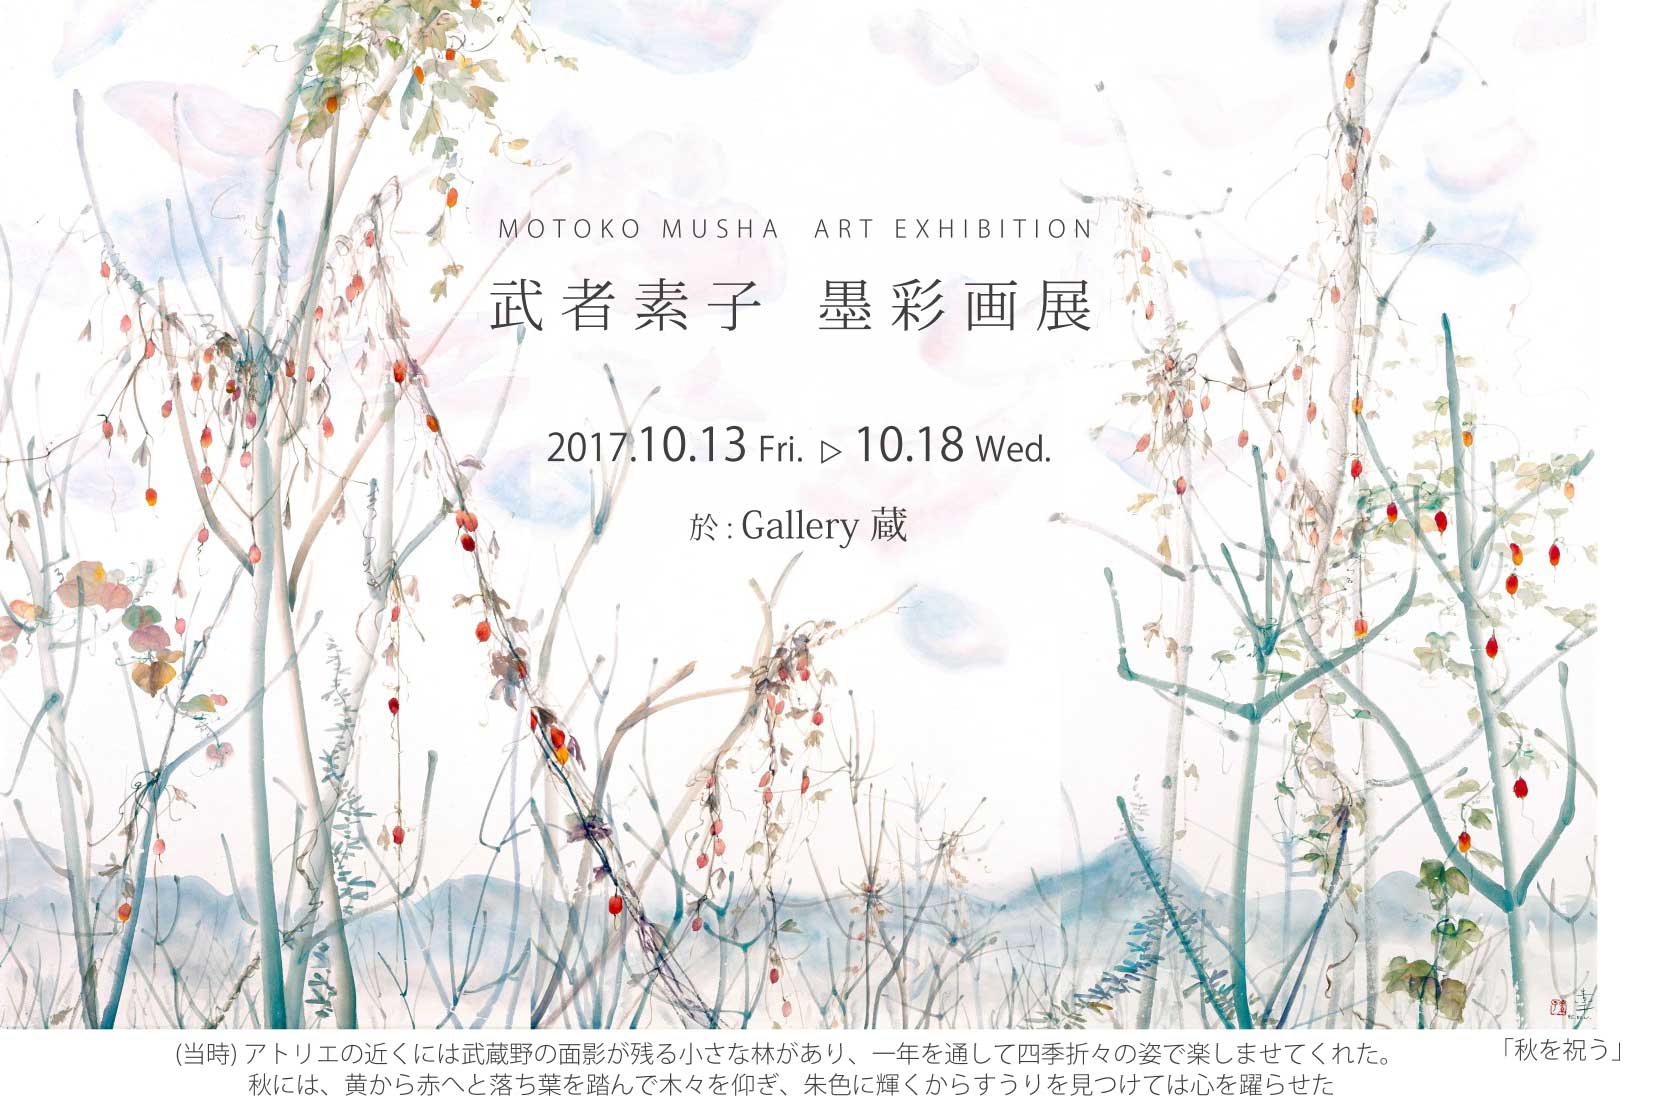 【終了】武者素子 墨彩画展 墨と彩の世界 - 秋 - MOTOKO MUSHA ART EXHIBITION